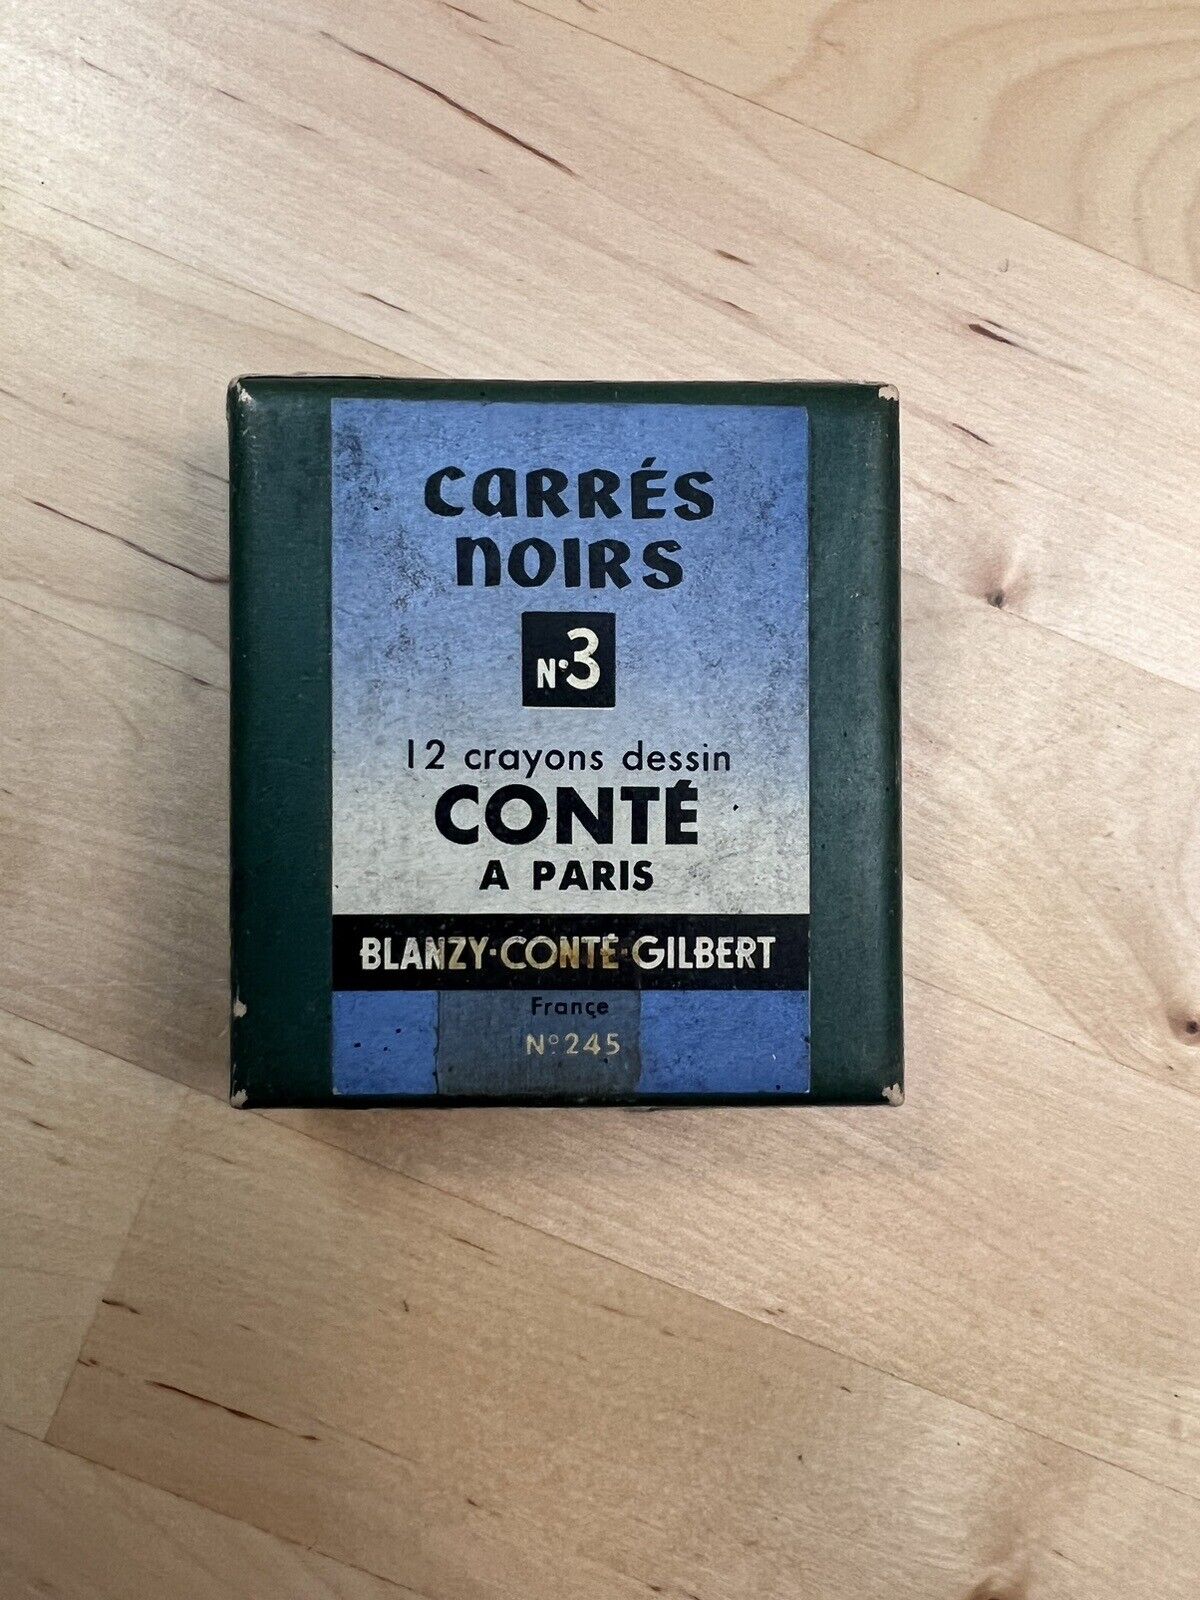 Vintage Conté a Paris Crayons (Carrés Noirs No.3) - France - 6 sticks in box 